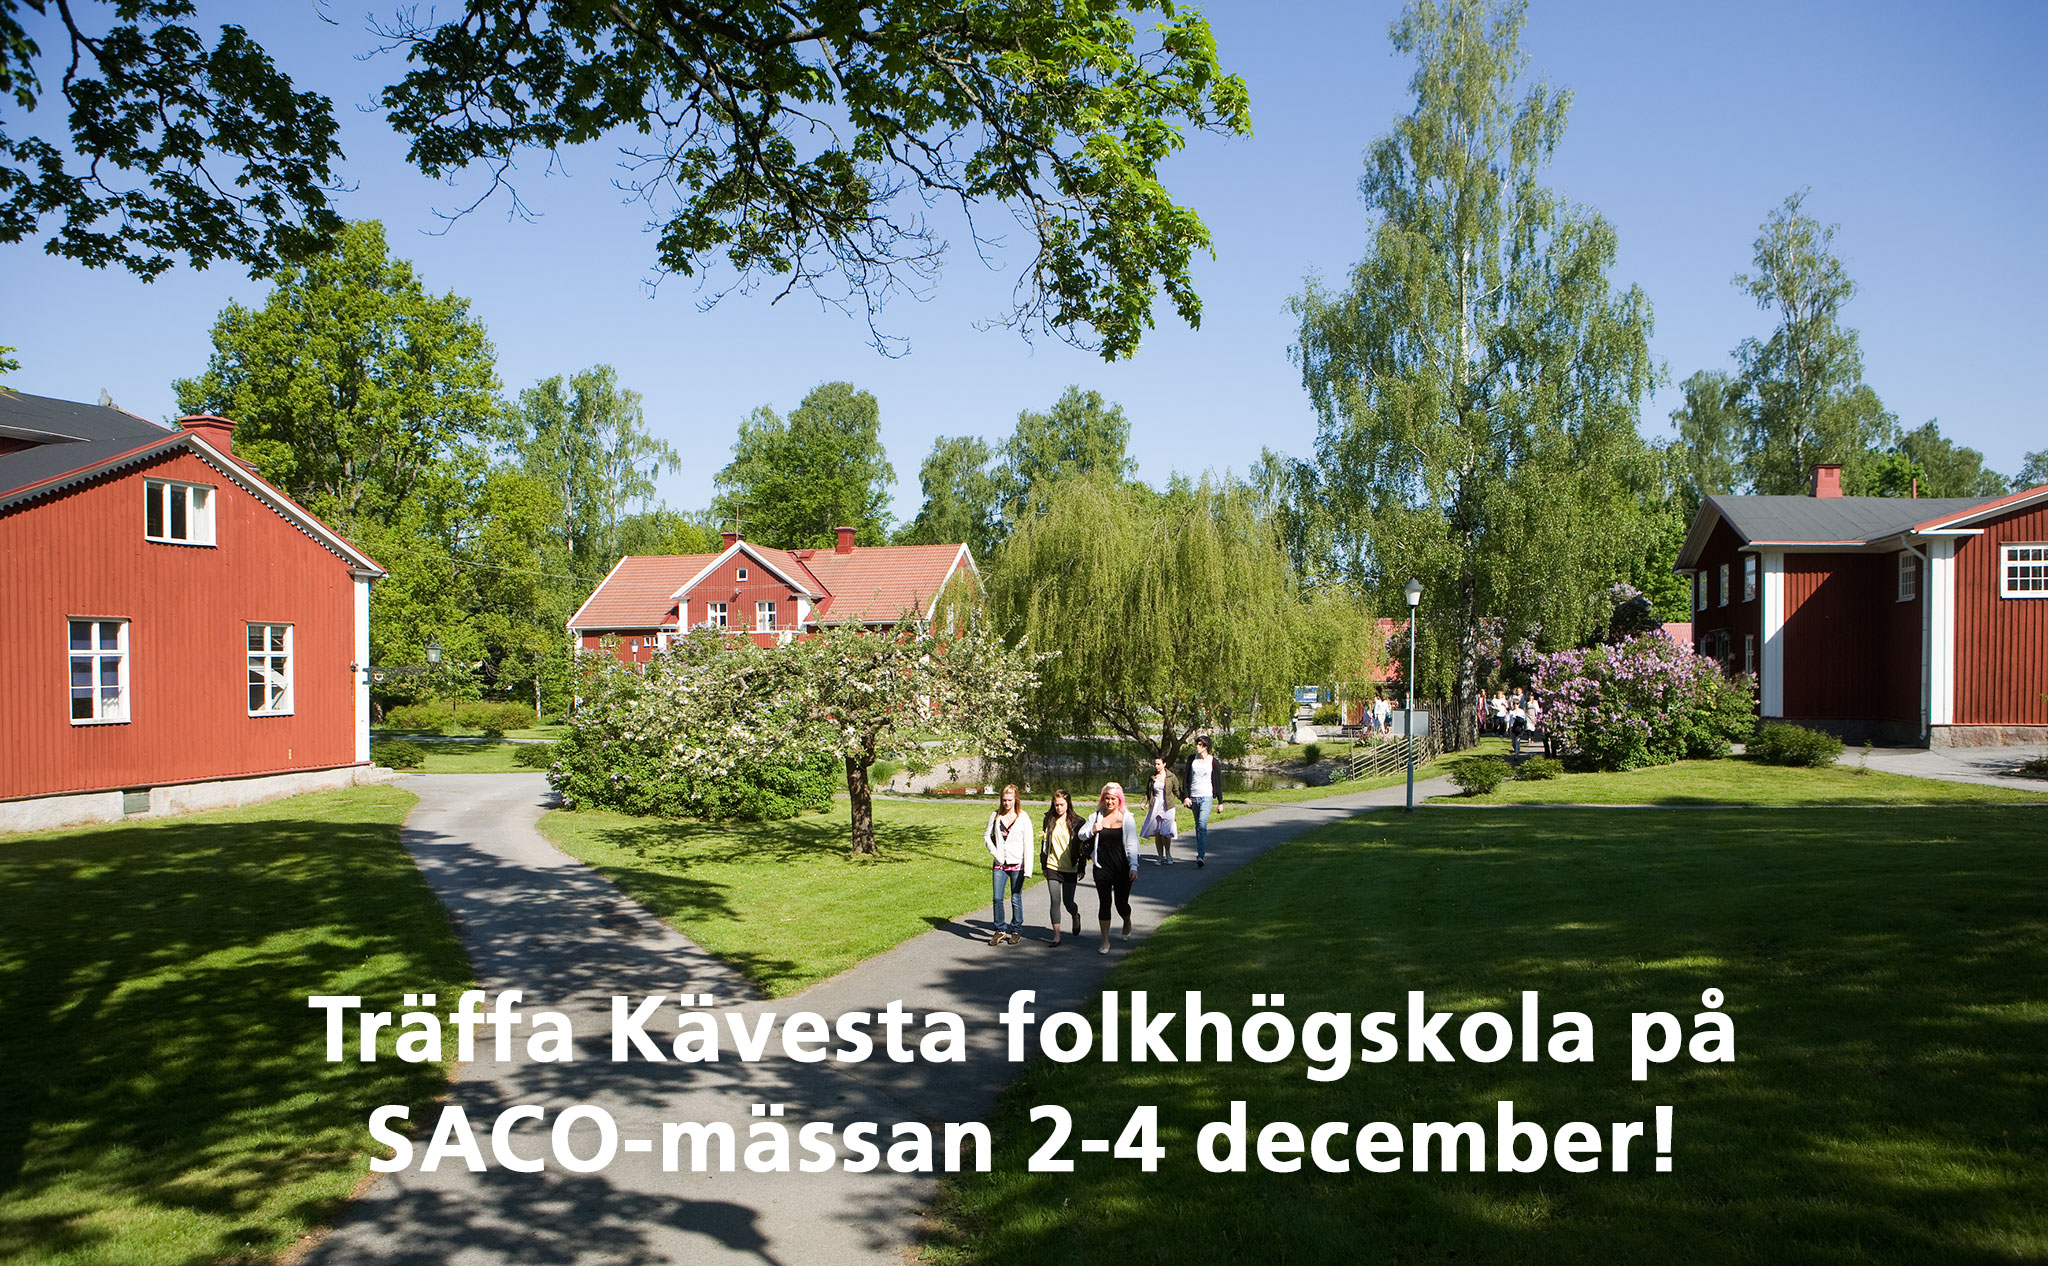 Miljöbild från Kävesta folkhögskola. Text: "Träffa Kävesta folkhögskola på SACO-mässan 2-4 december!"